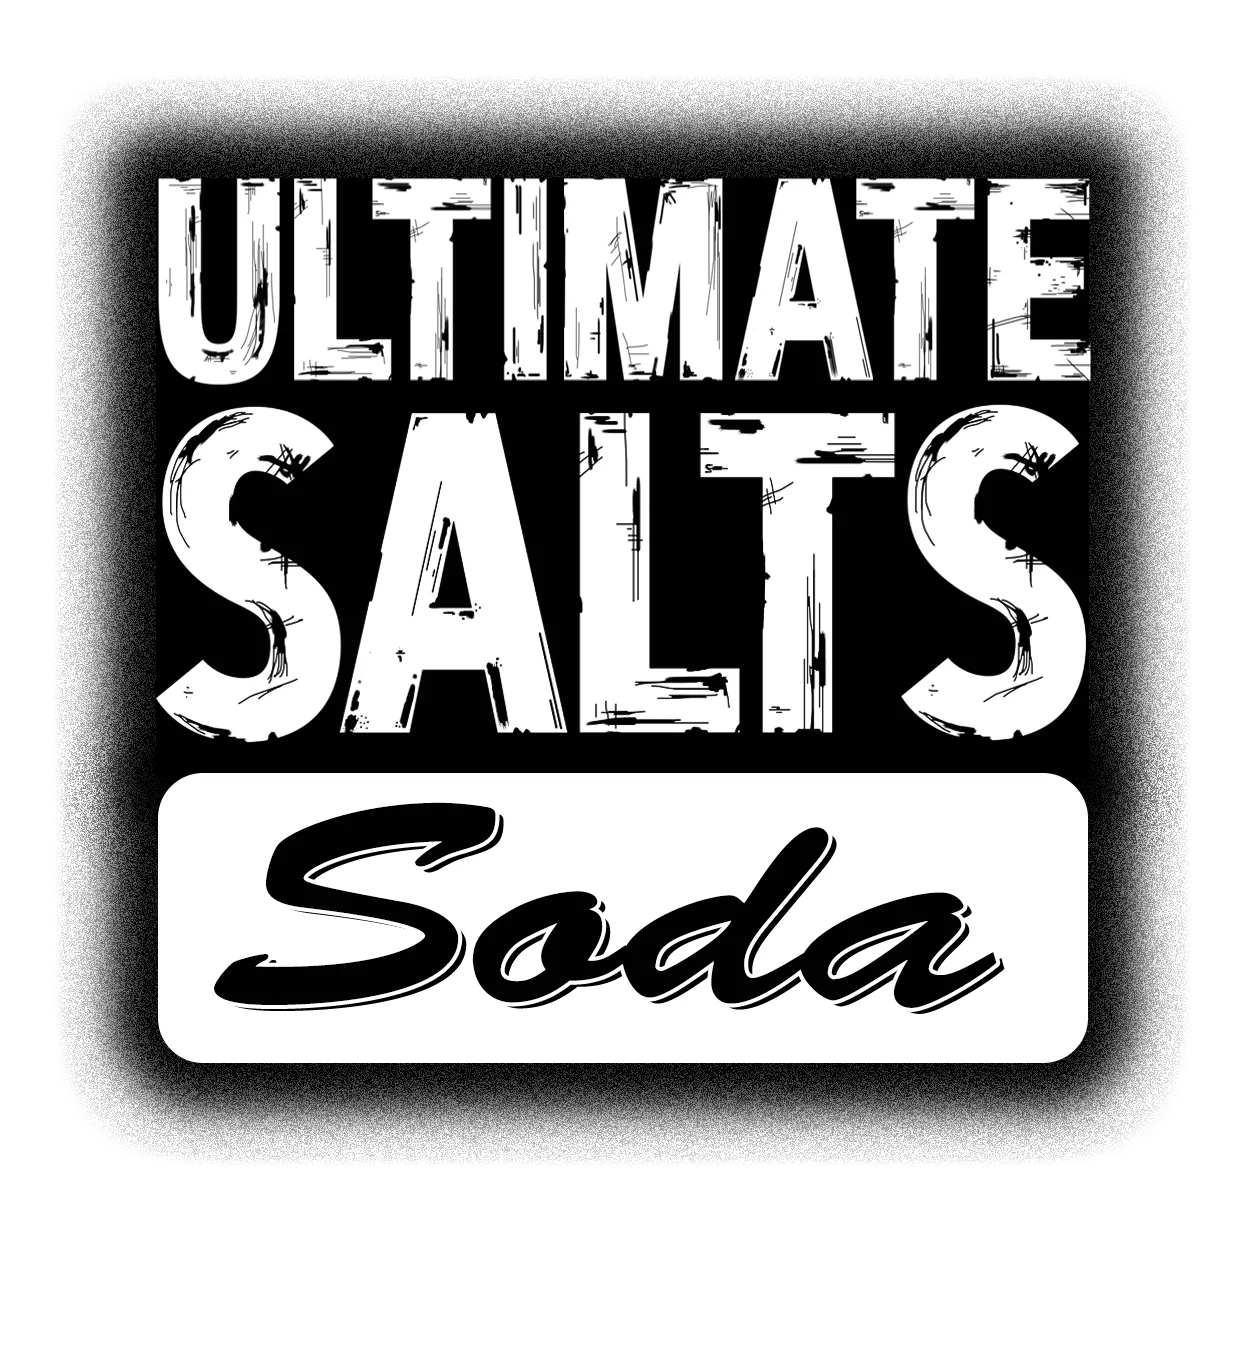 Ultimate Salts Soda